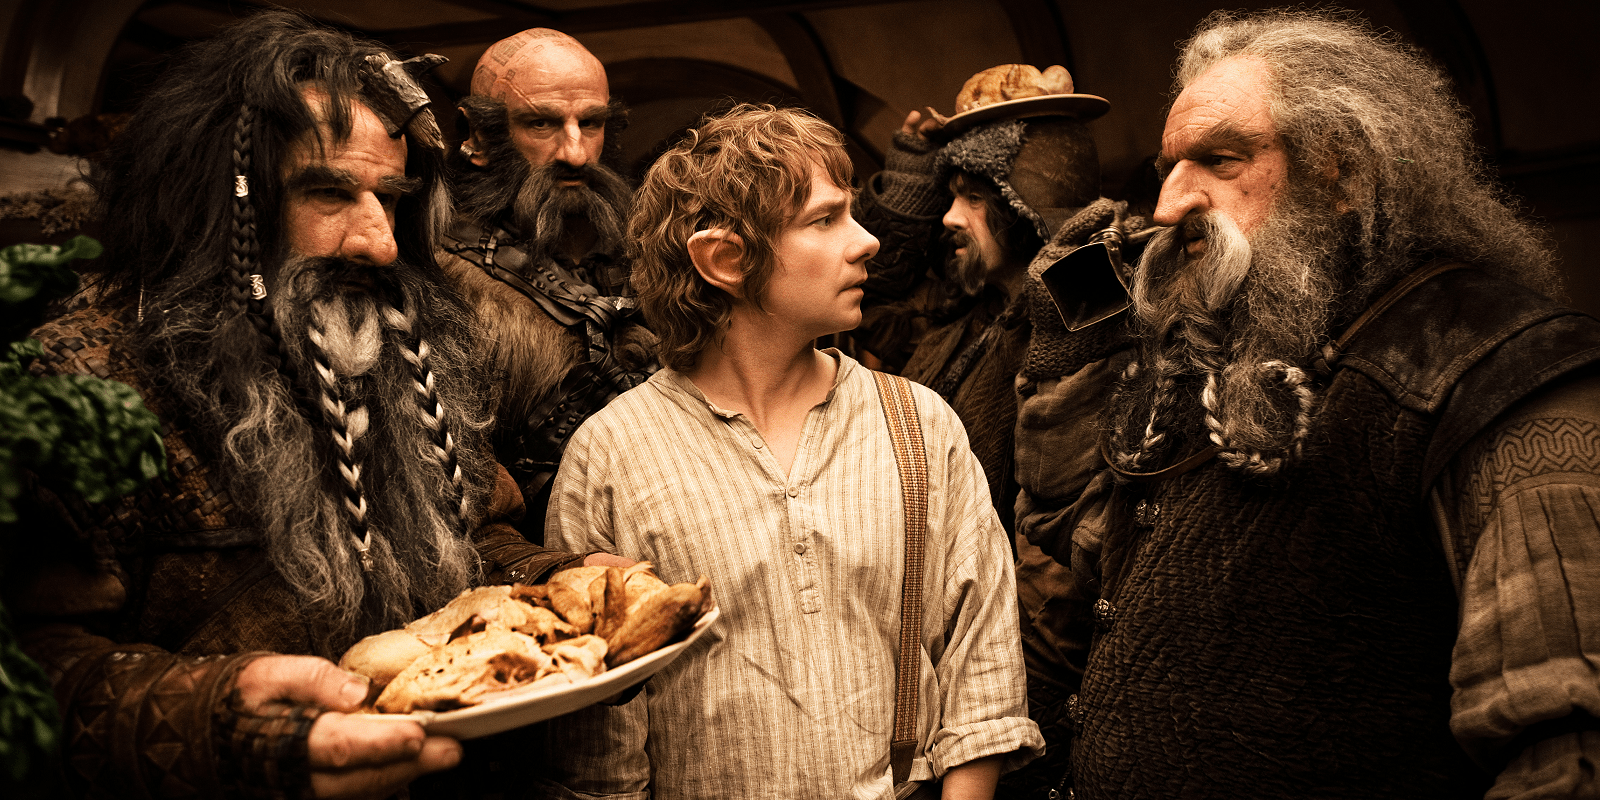 The dwarves in Bilbo's home